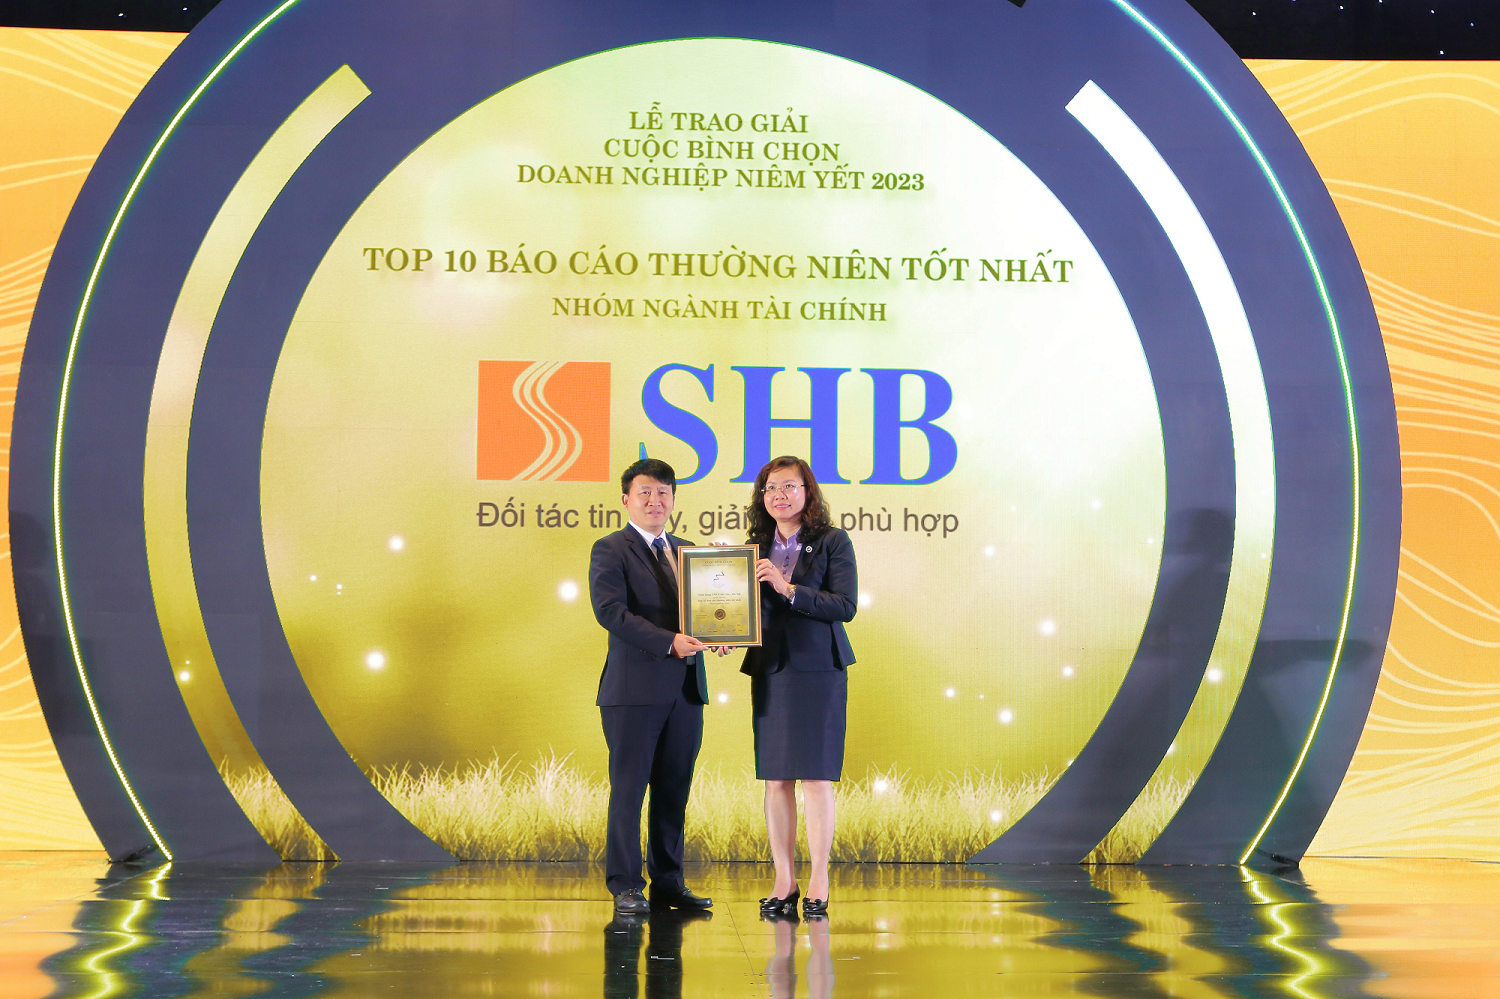 i diện SHB nhận giải thưởng từ BTC